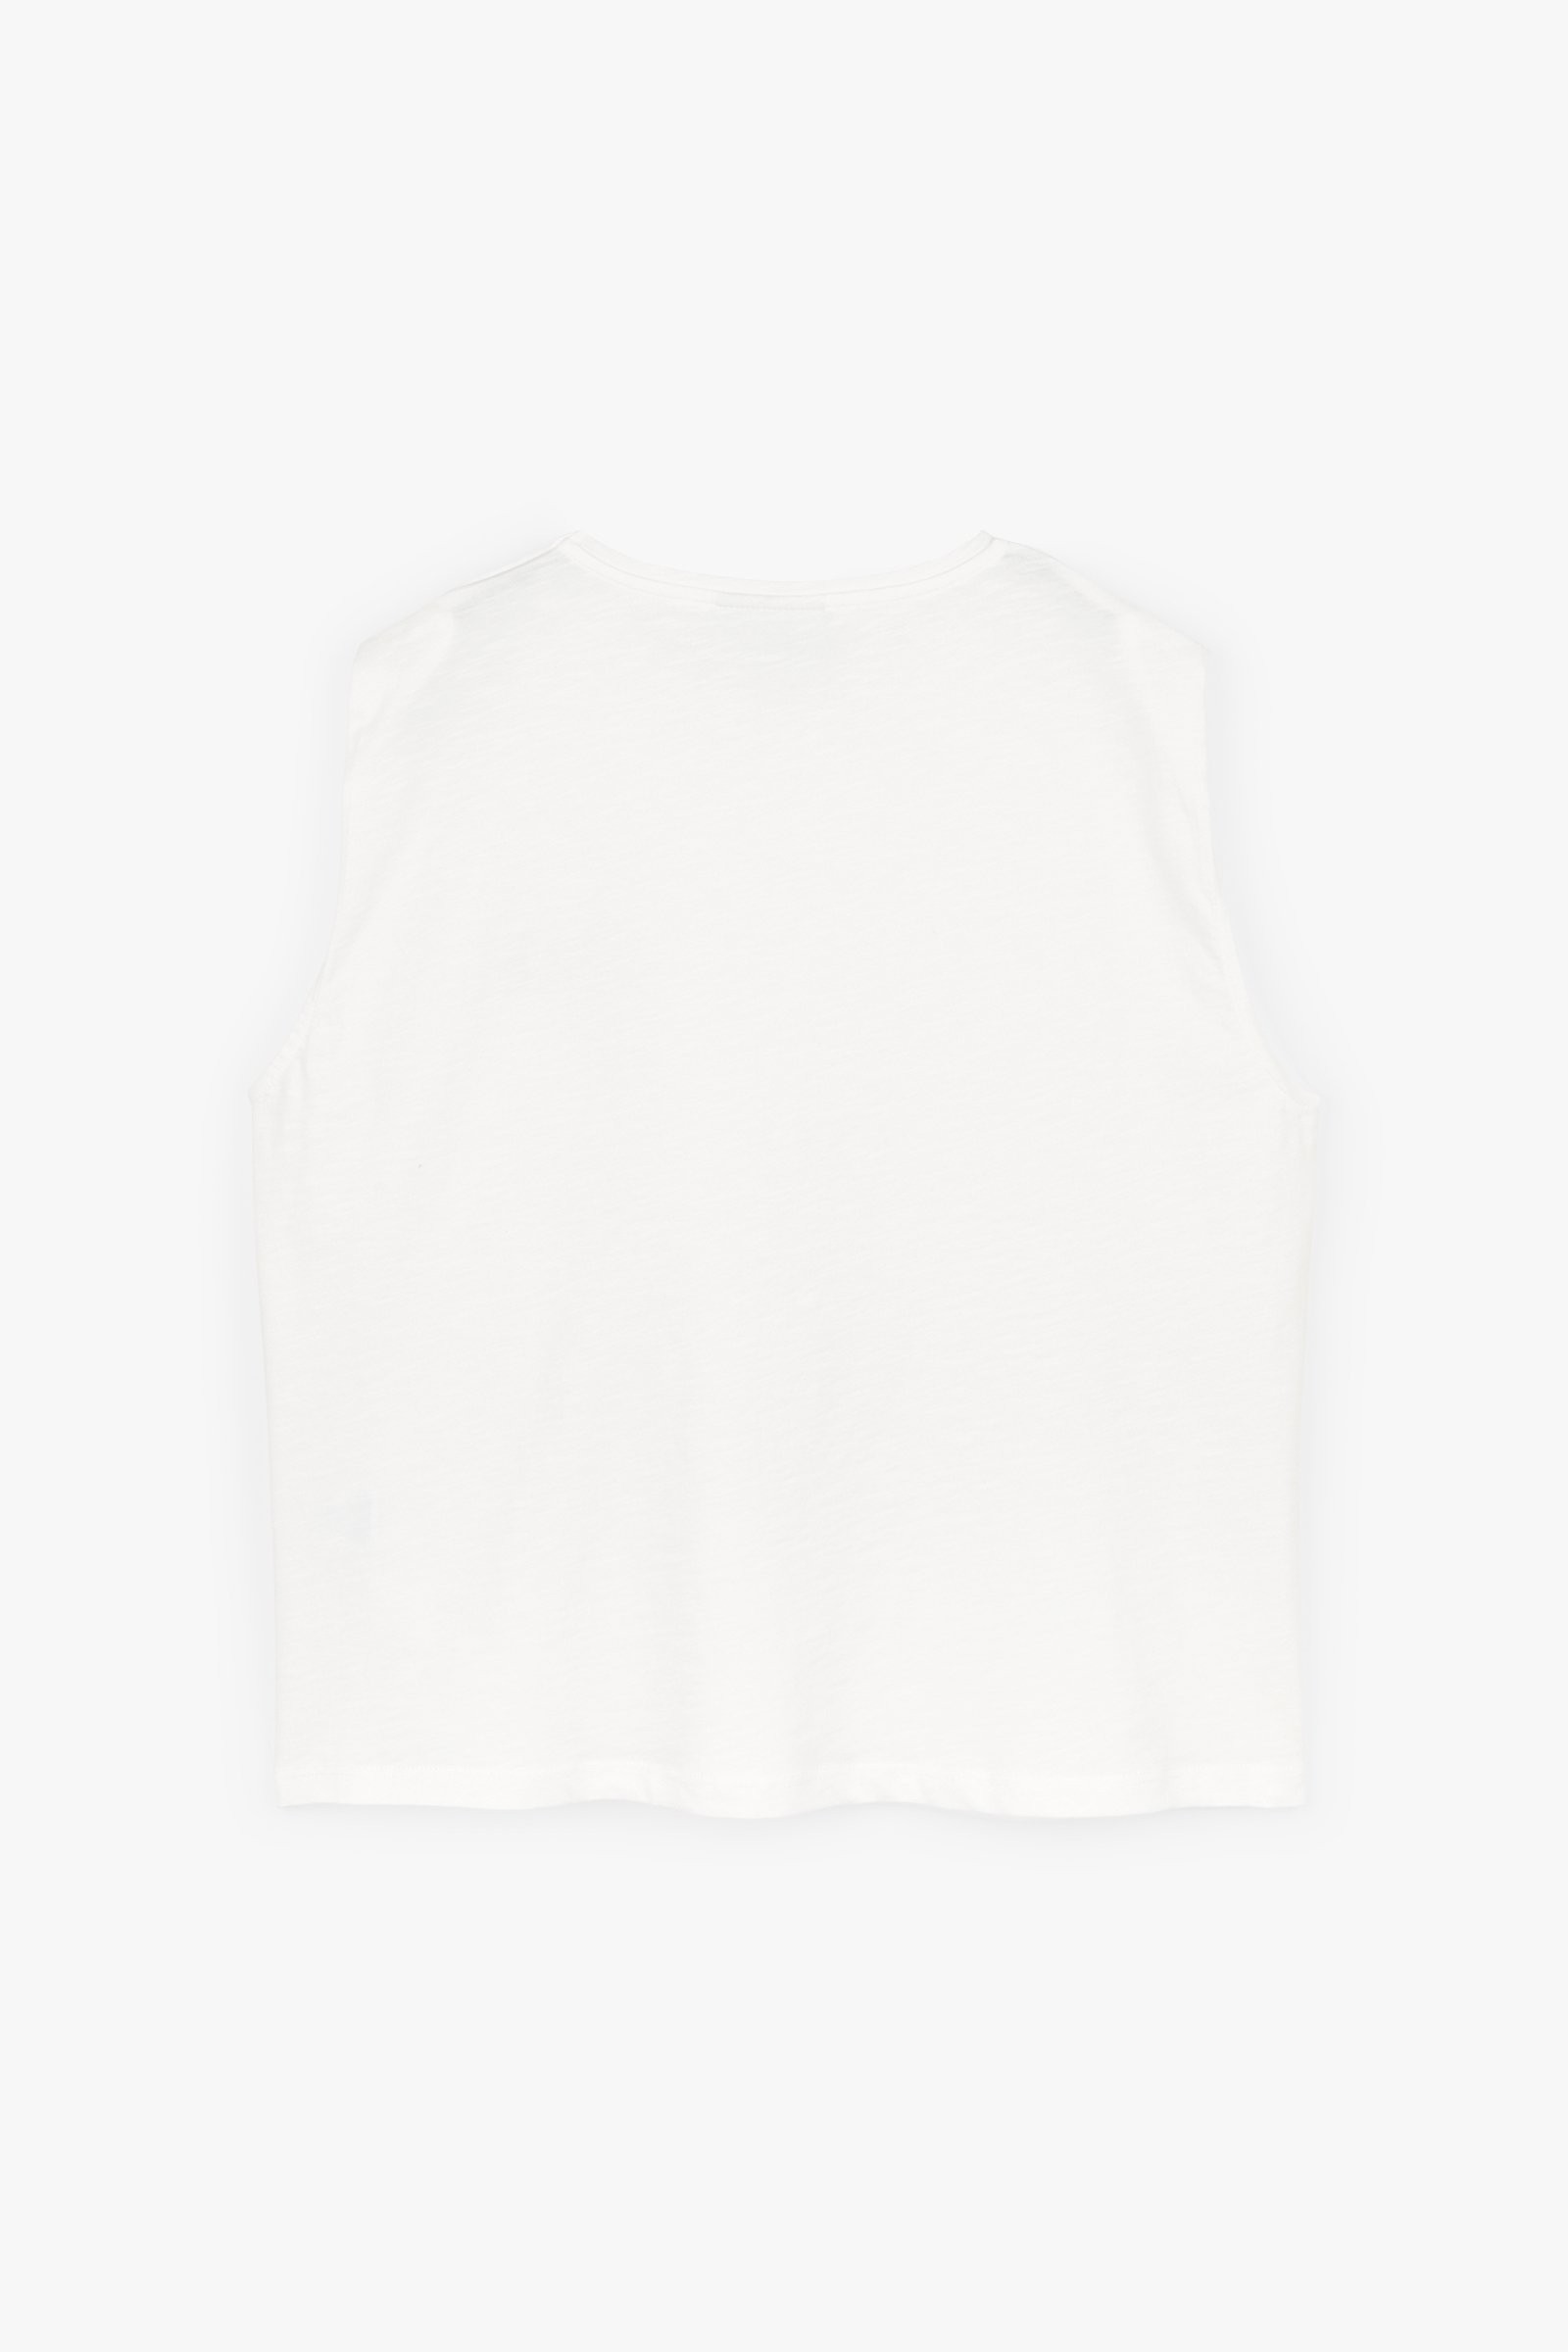 CKS Dames - SARON - t-shirt korte mouwen - wit